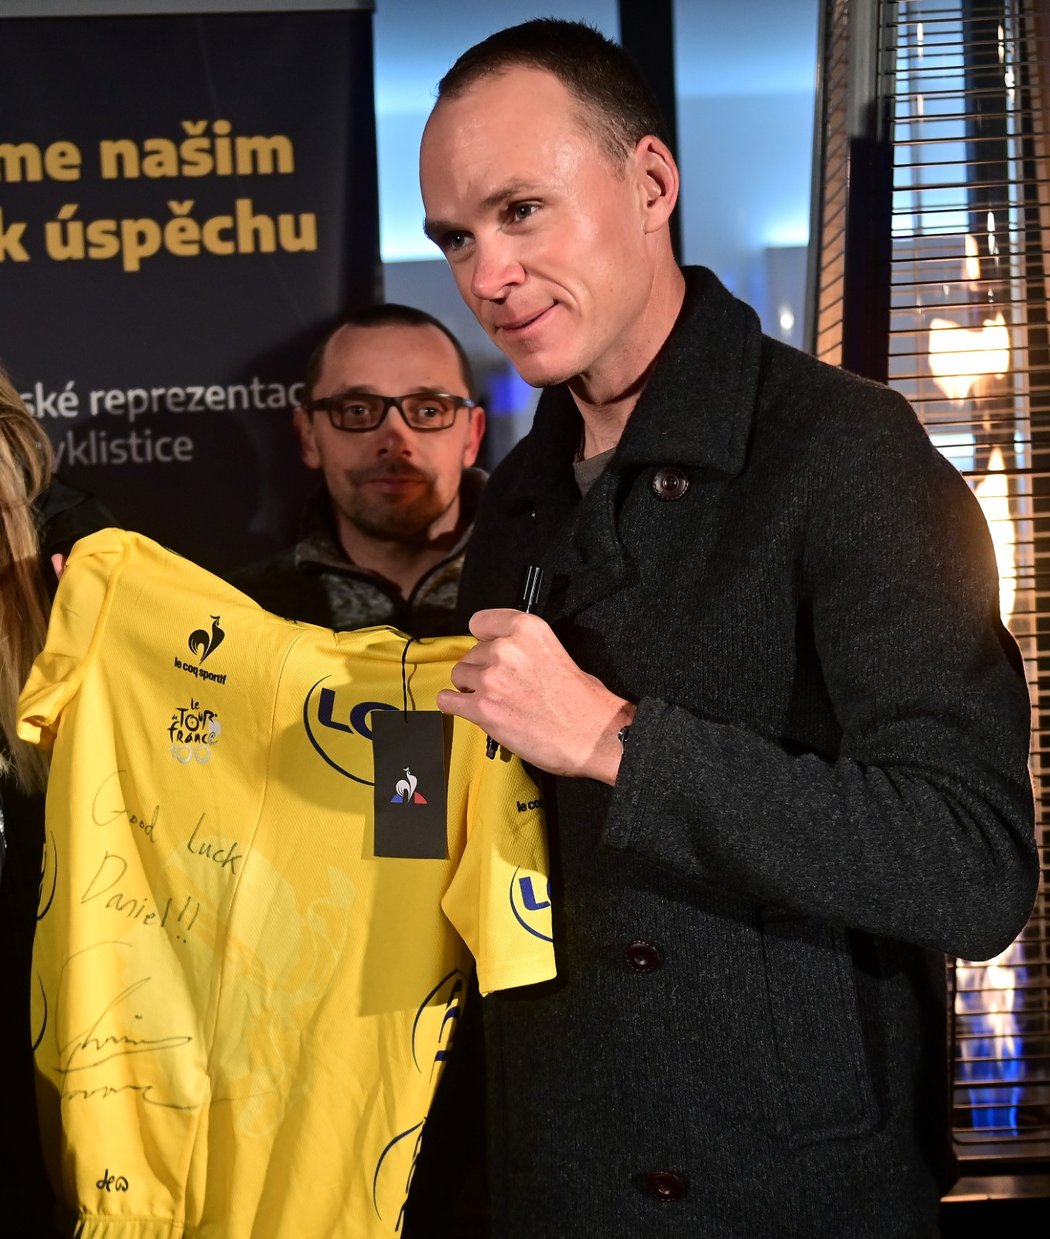 Cyklistický šampion Chris Froome přijel poprvé do Prahy, aby vydražil žlutý dres z Tour 2013 pro syna svého českého kolegy